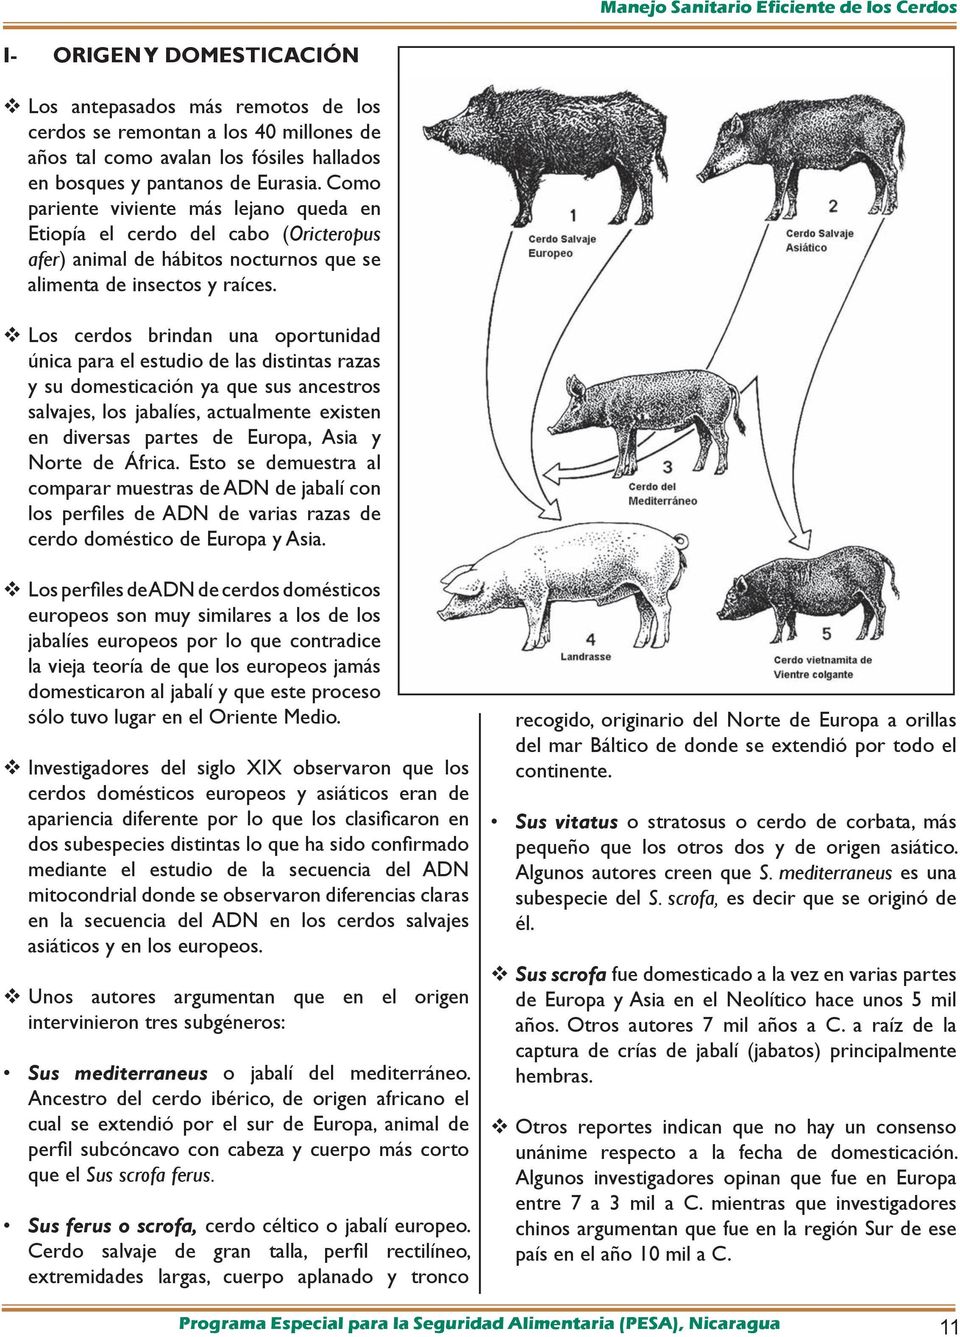 Los cerdos brindan una oportunidad única para el estudio de las distintas razas y su domesticación ya que sus ancestros salvajes, los jabalíes, actualmente existen en diversas partes de Europa, Asia